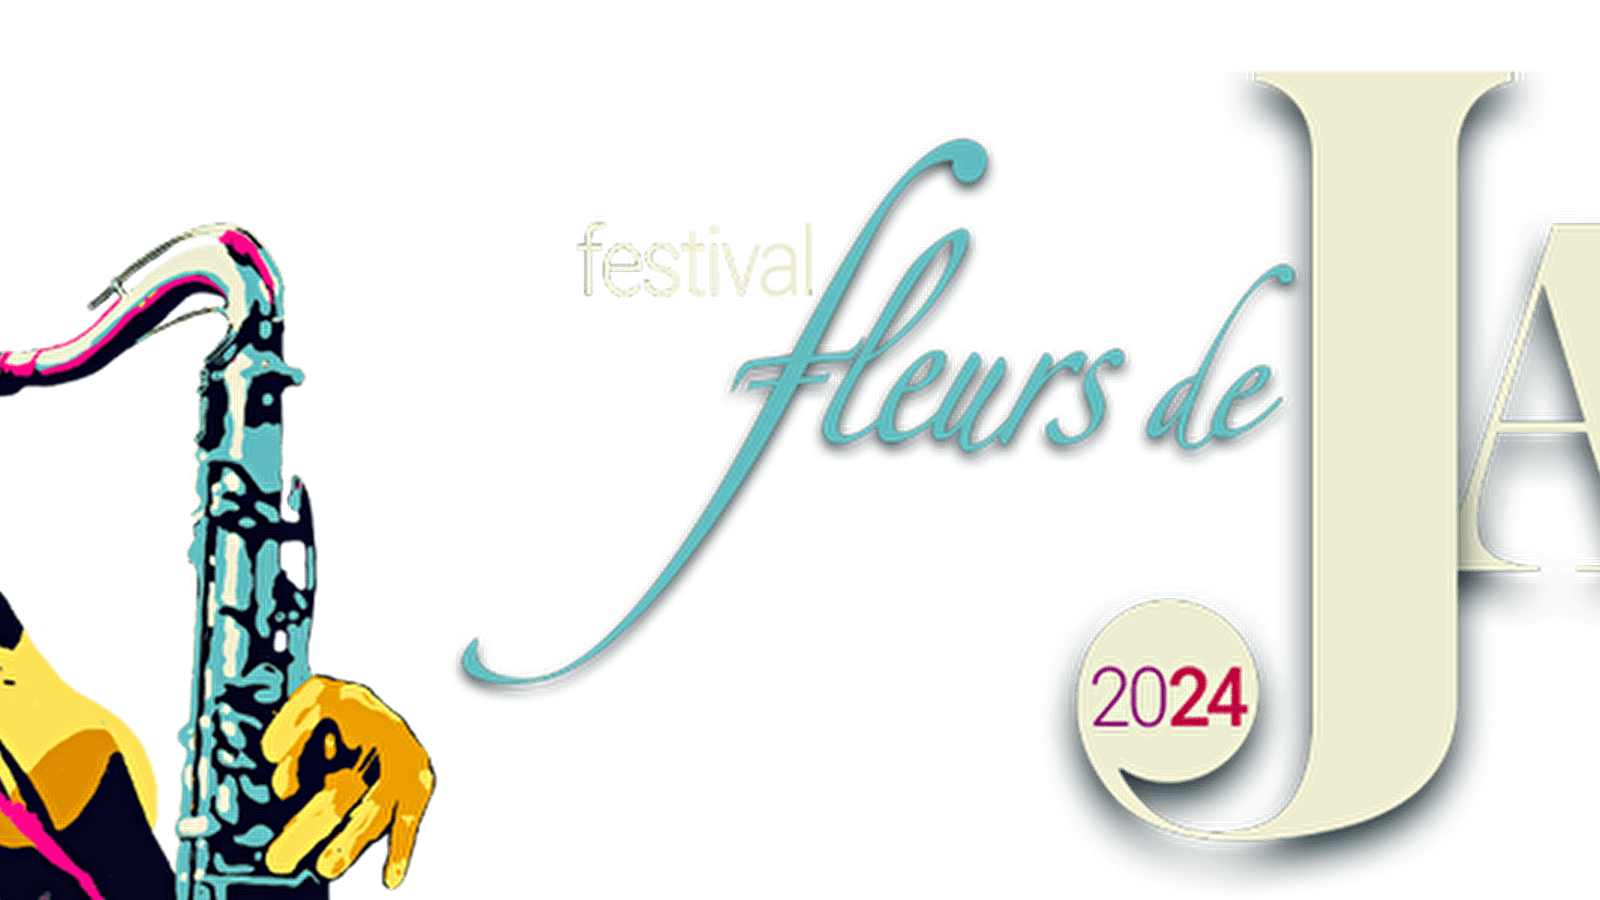 Festival "Fleurs de Jazz" du 9 au 11 mai 2024 - 11ème... Le 11 mai 2024